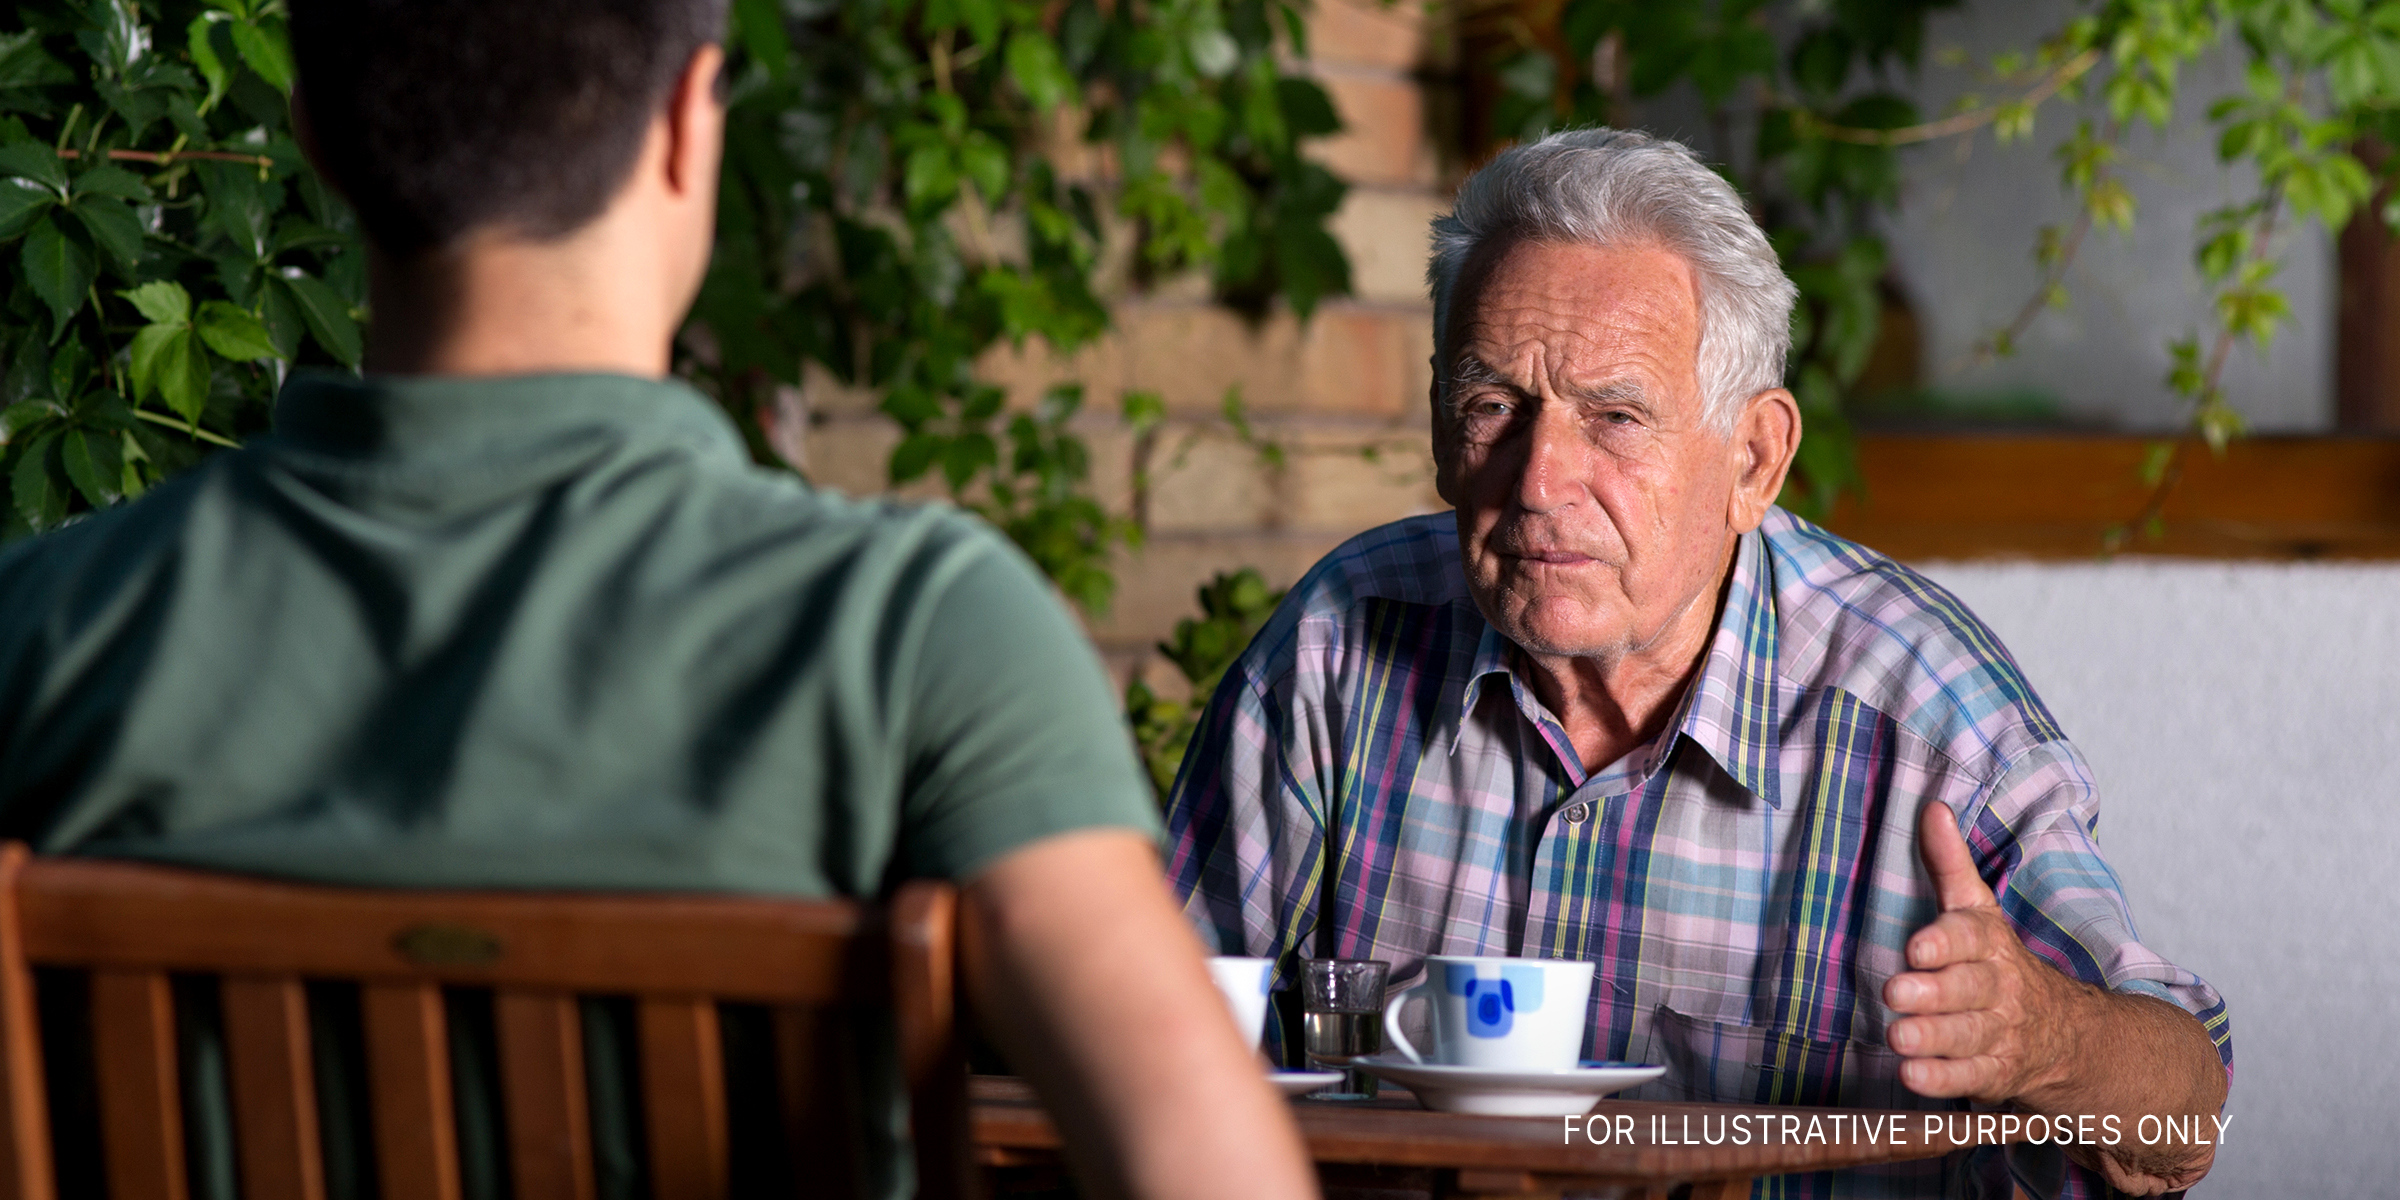 An elderly man | Source: Shutterstock